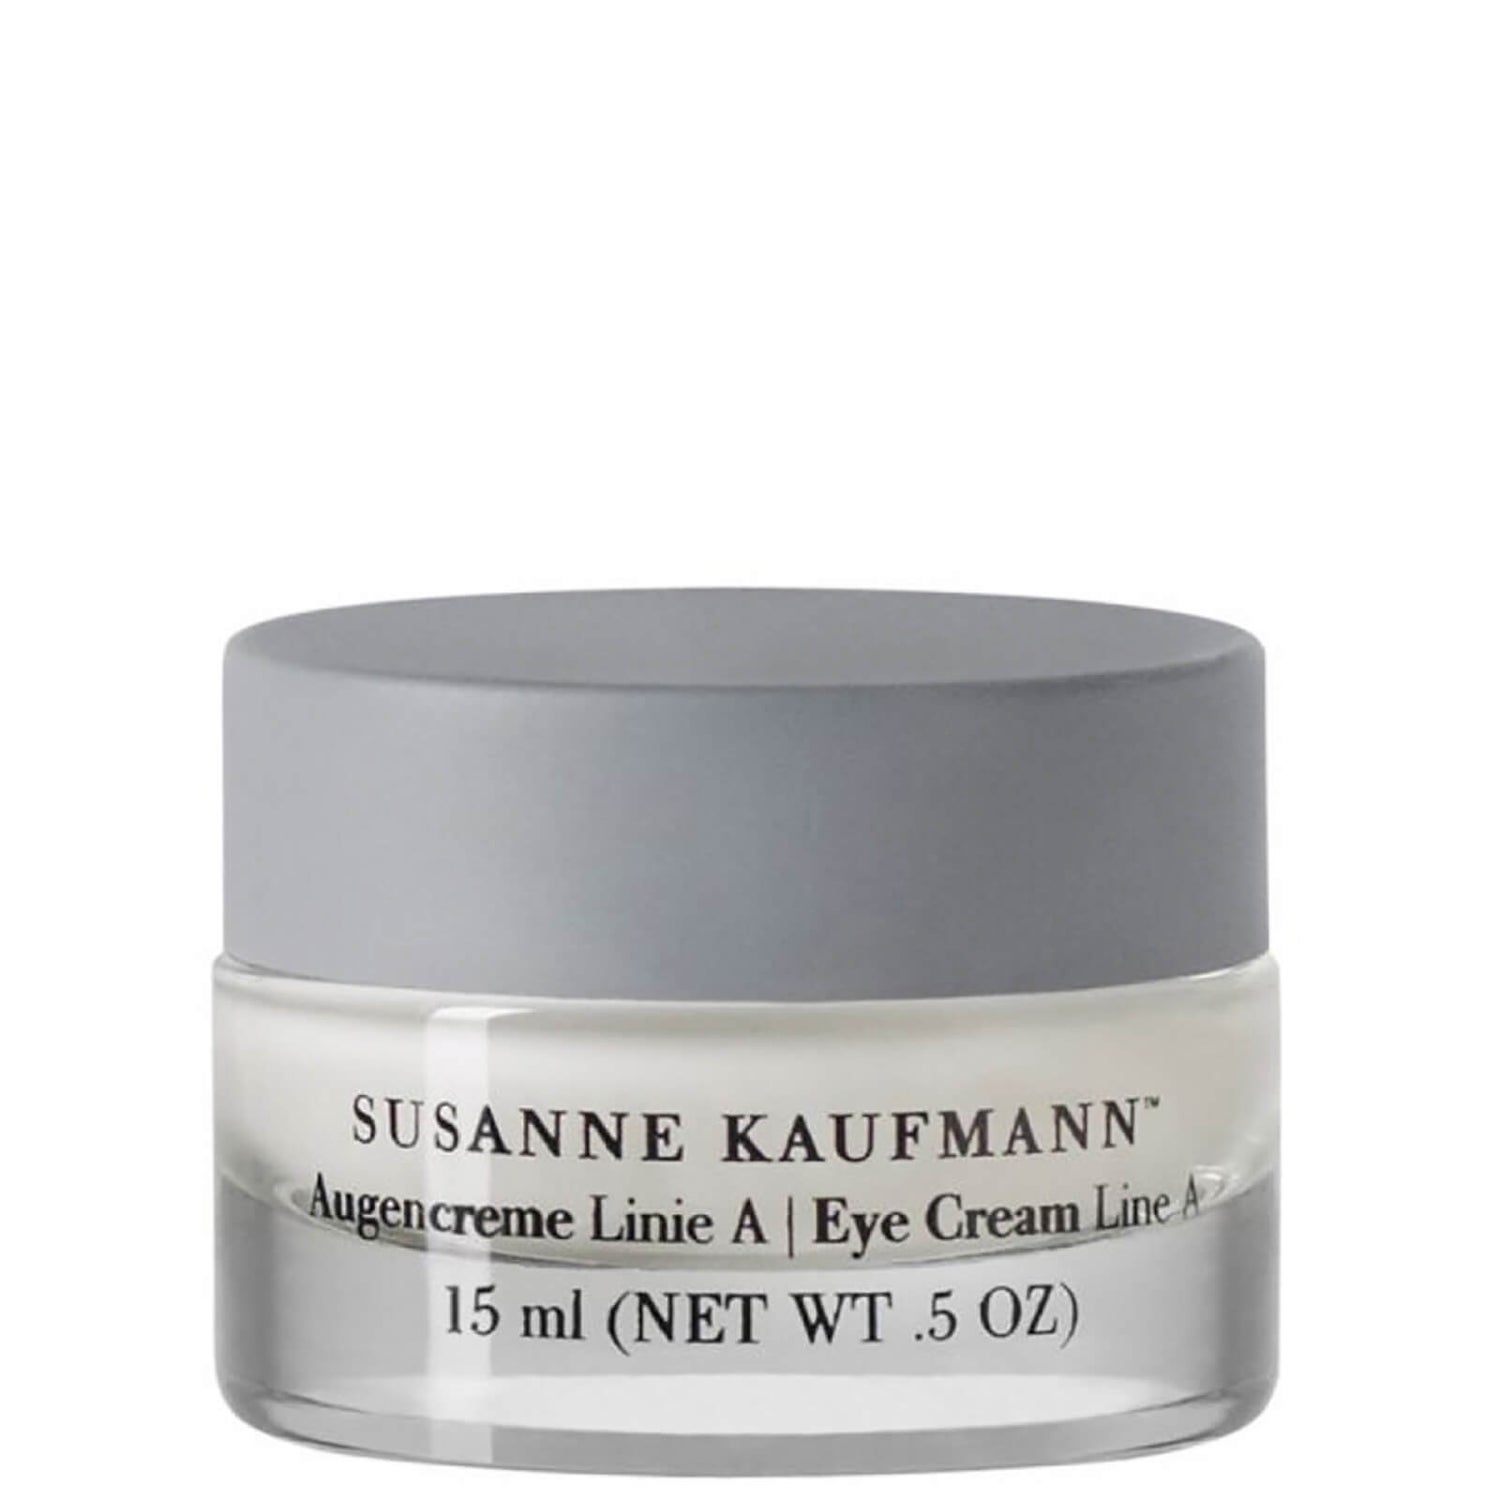 Susanne Kaufmann Eye Cream Line A